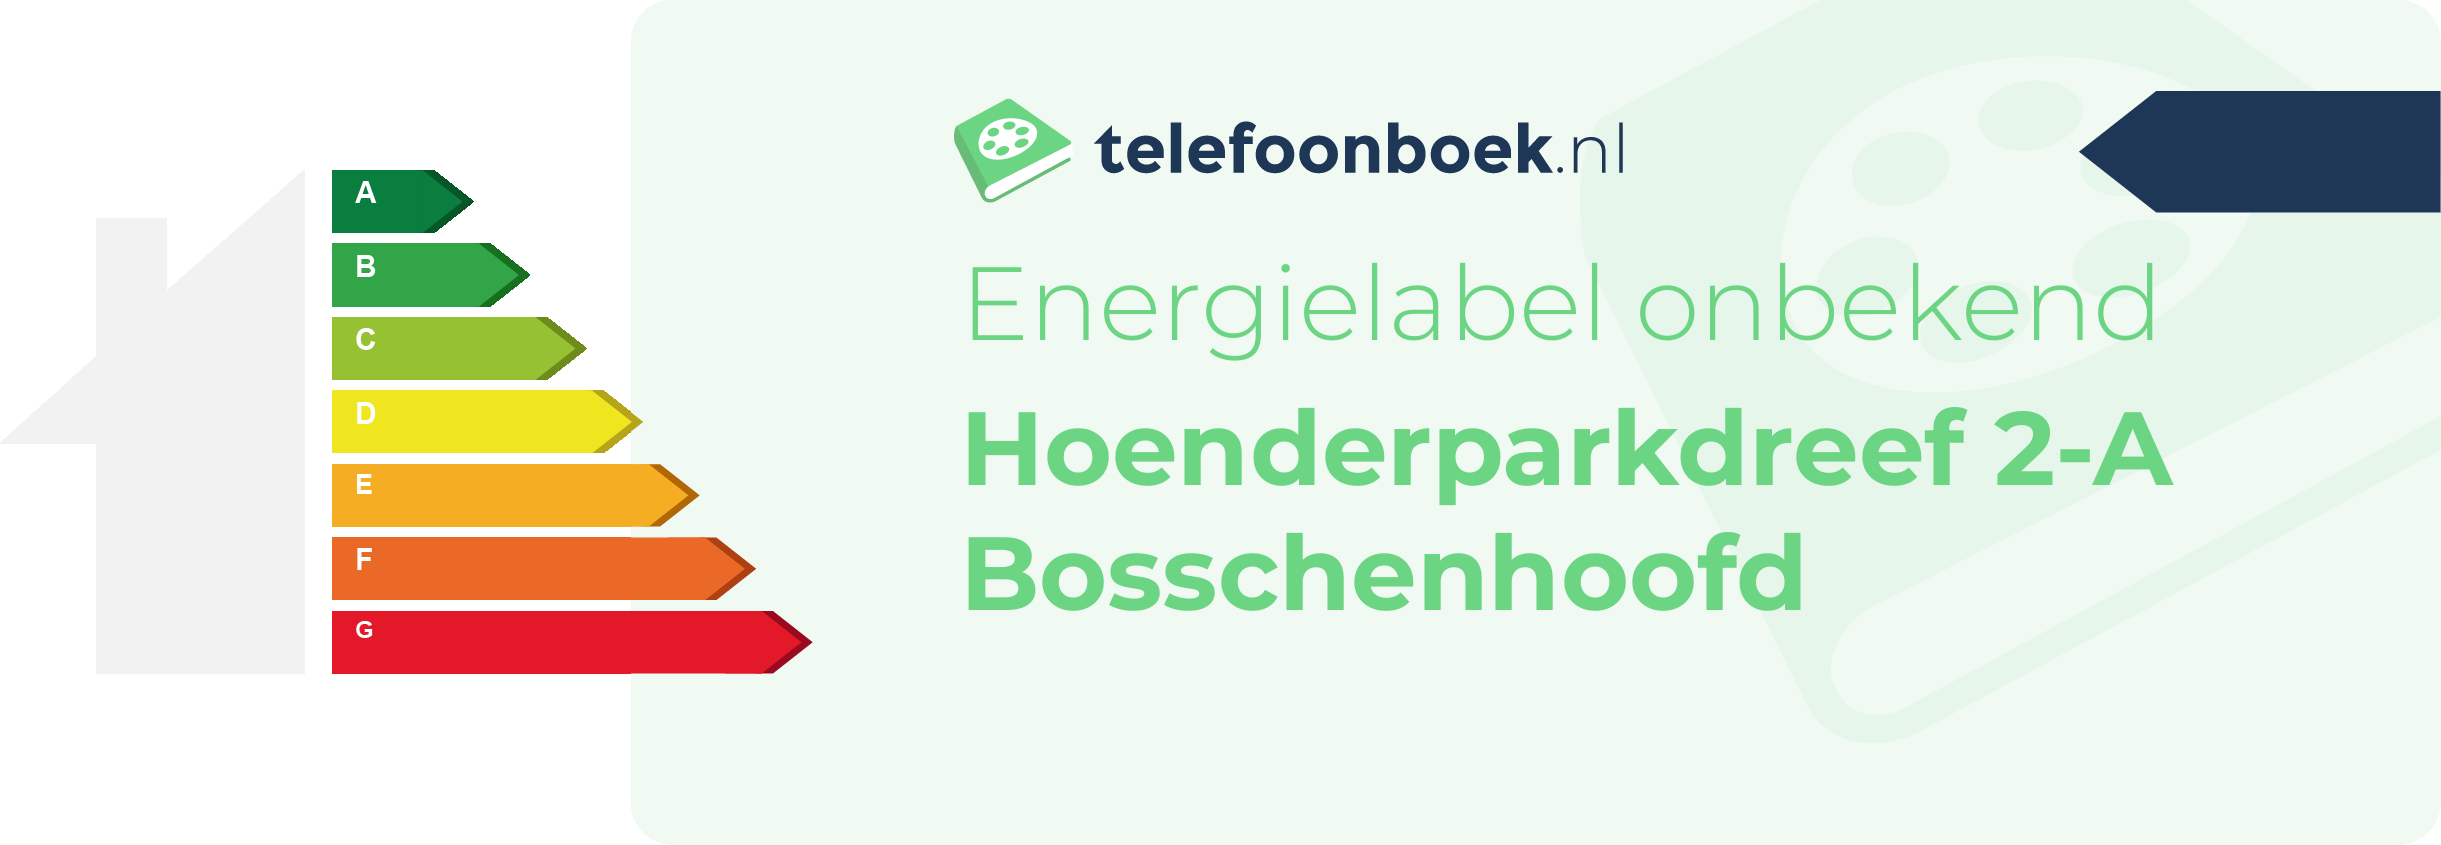 Energielabel Hoenderparkdreef 2-A Bosschenhoofd